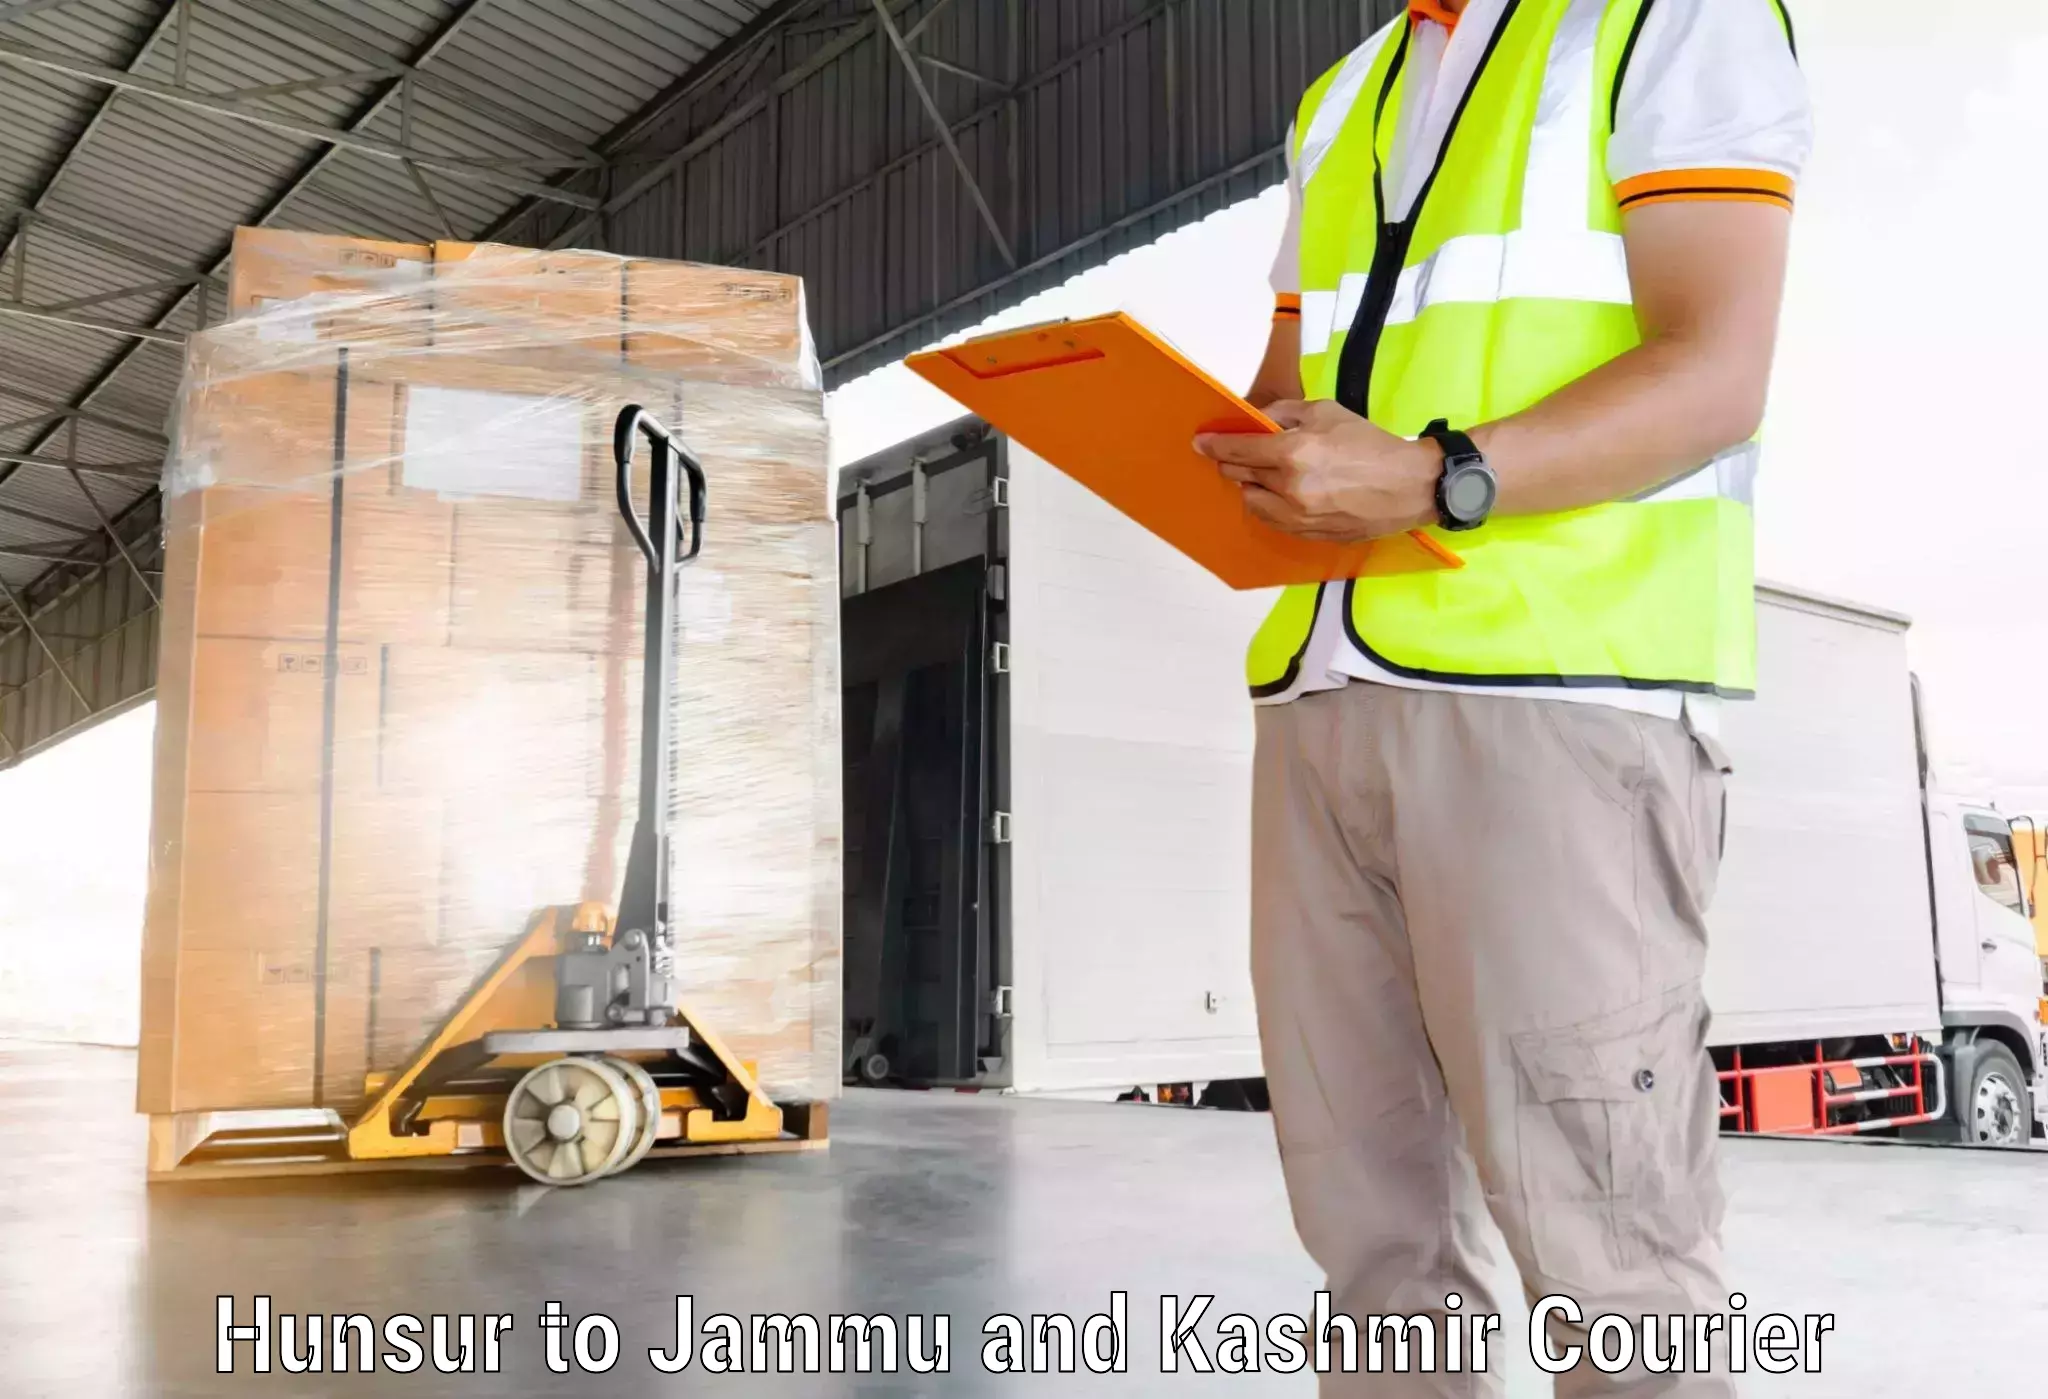 Customer-centric shipping in Hunsur to Hiranagar